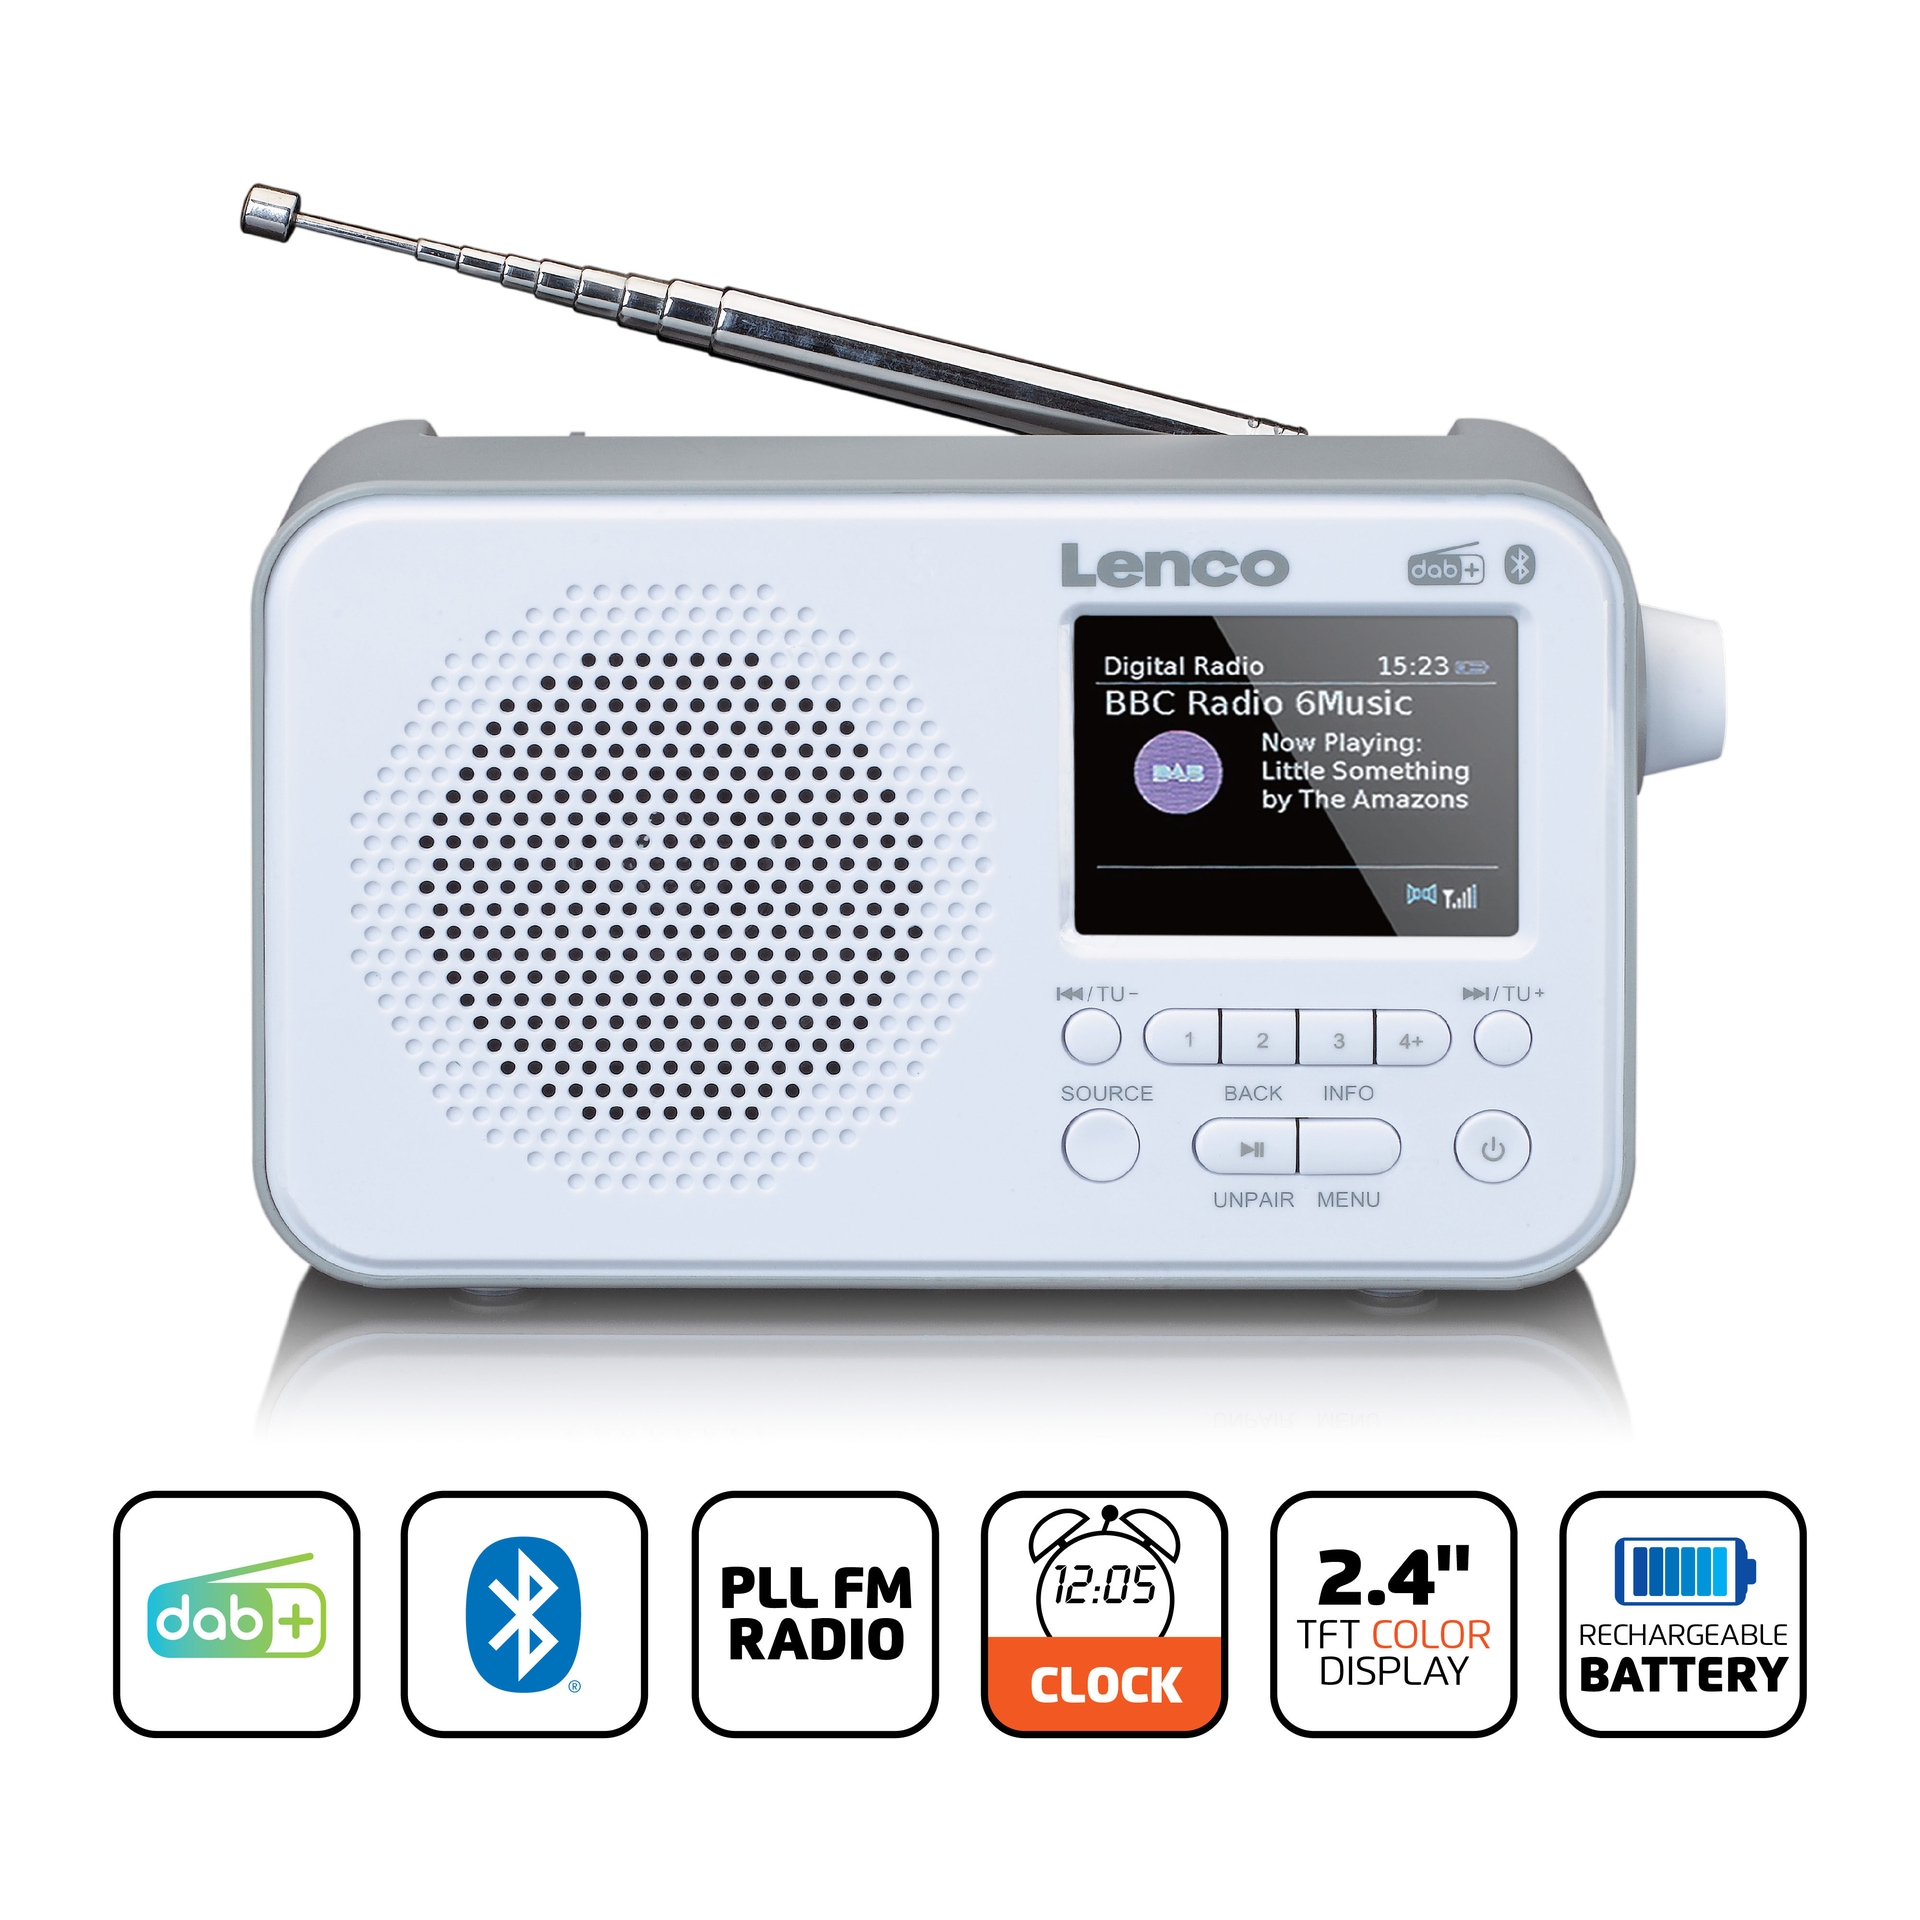 Rechnung auf (Digitalradio »PDR-036WH (DAB+) Digitalradio Lenco (DAB+) DAB+/FM-Radio«, - kaufen